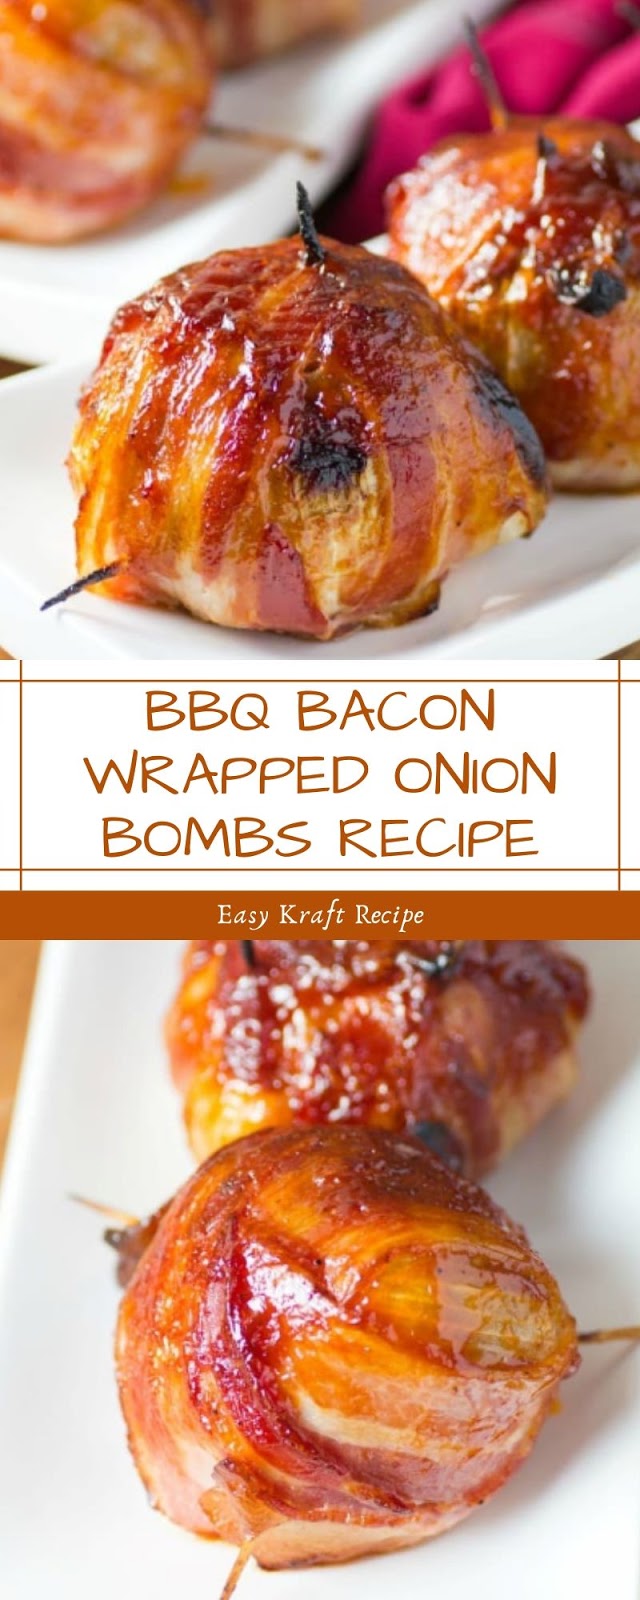 BBQ BACON WRAPPED ONION BOMBS RECIPE - Easy Kraft Recipes